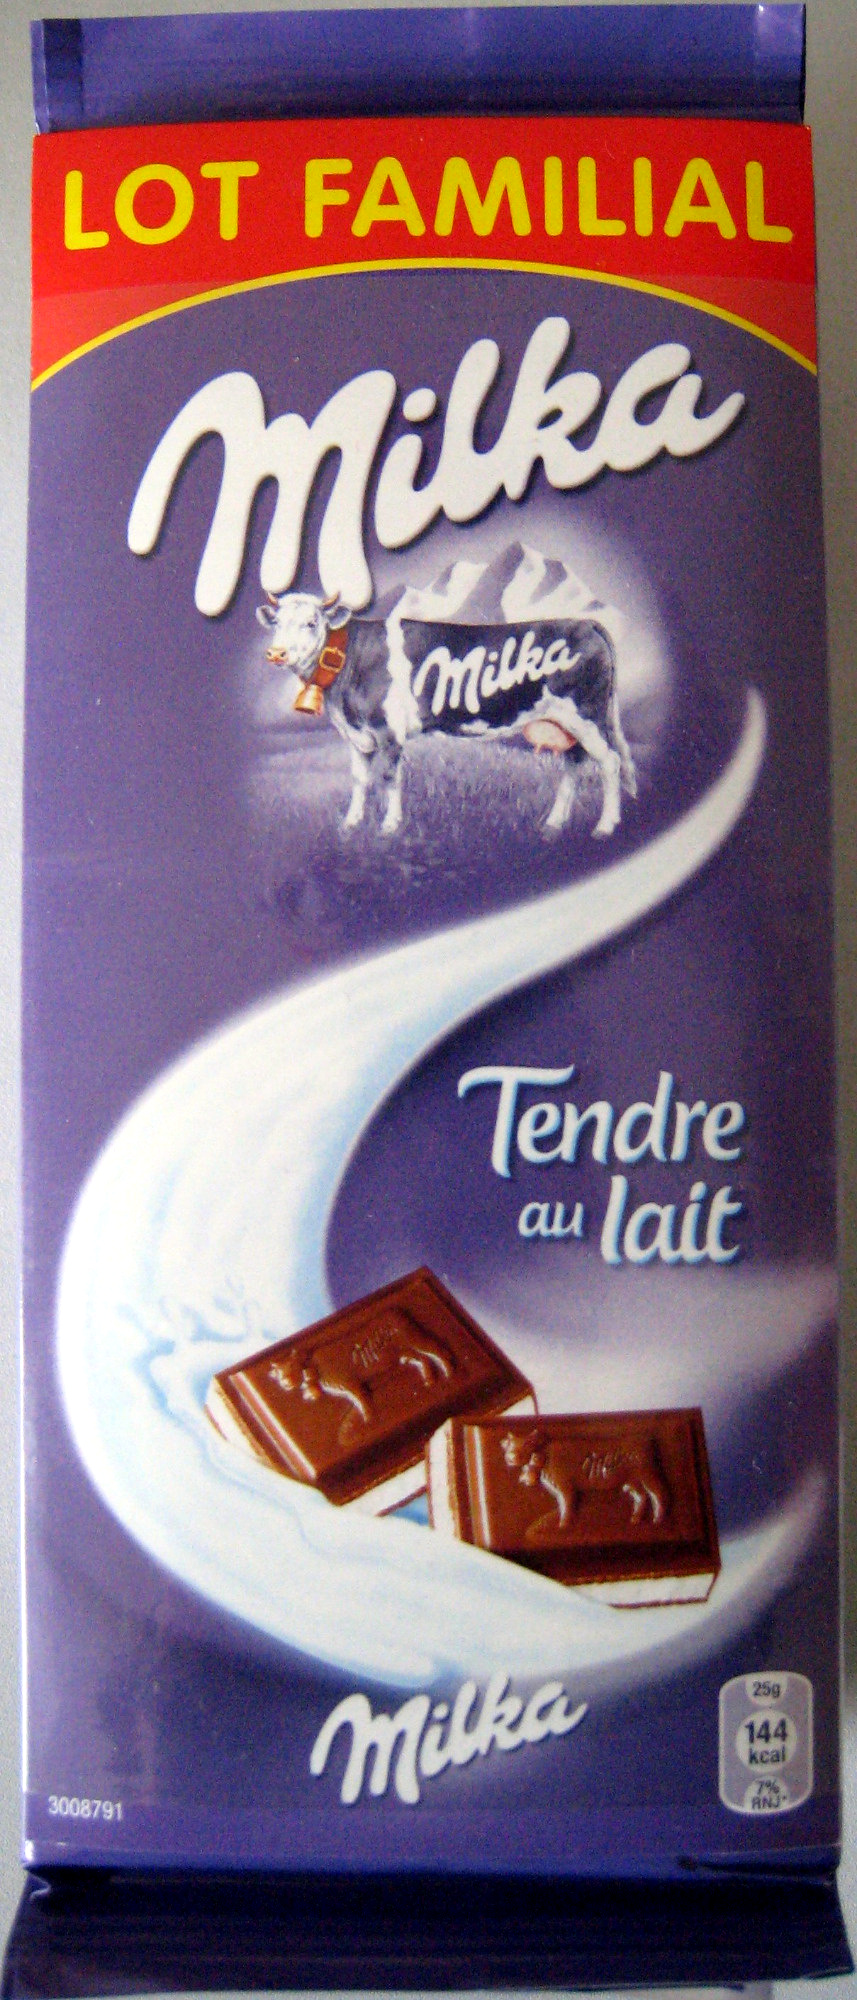 Chocolat Tendre au lait (lot de 6) - Produkt - fr